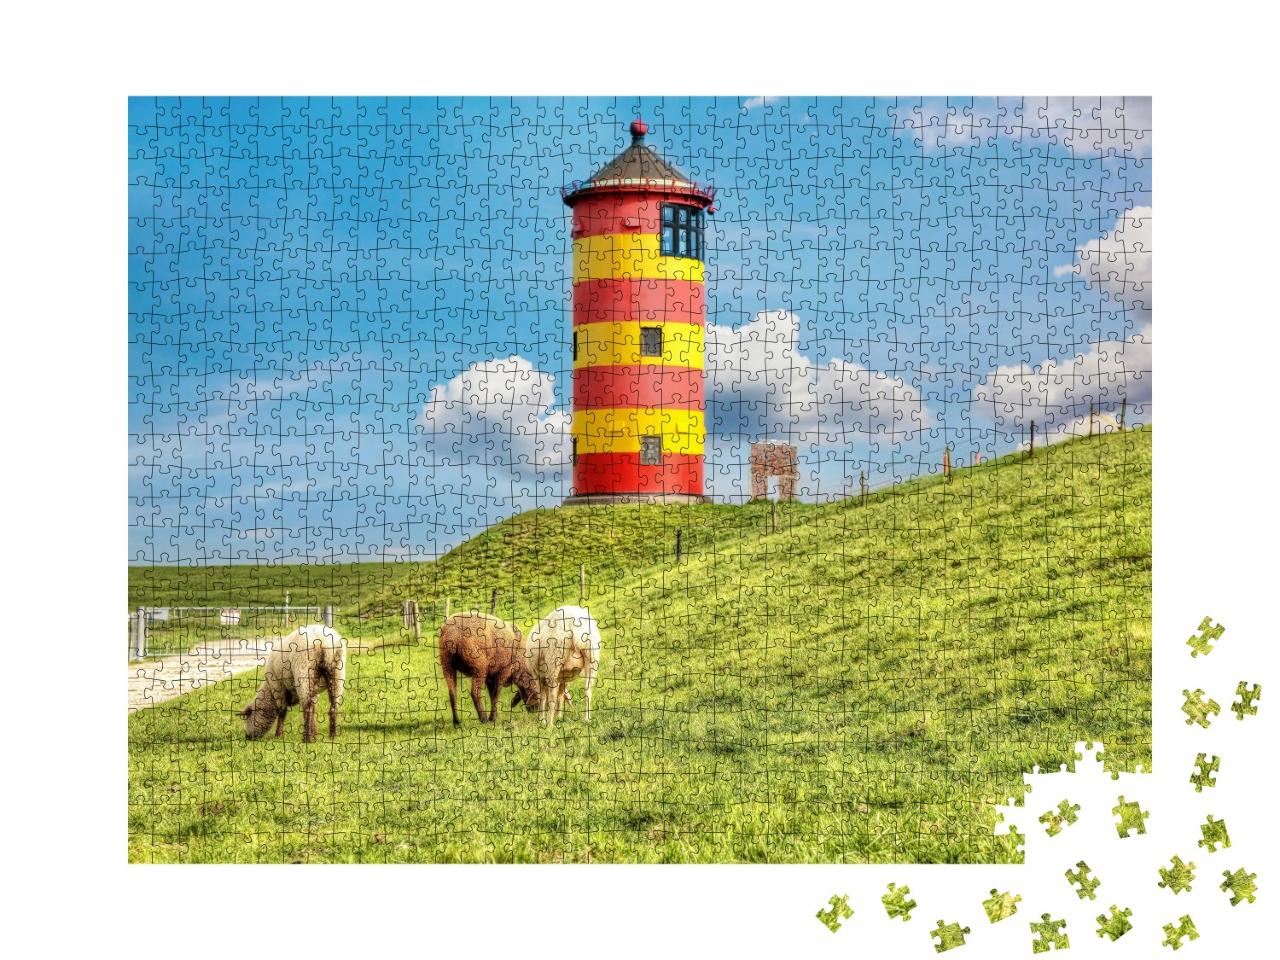 Puzzle de 1000 pièces « Moutons devant le phare de Pilsumer sur la côte allemande de la mer du Nord »